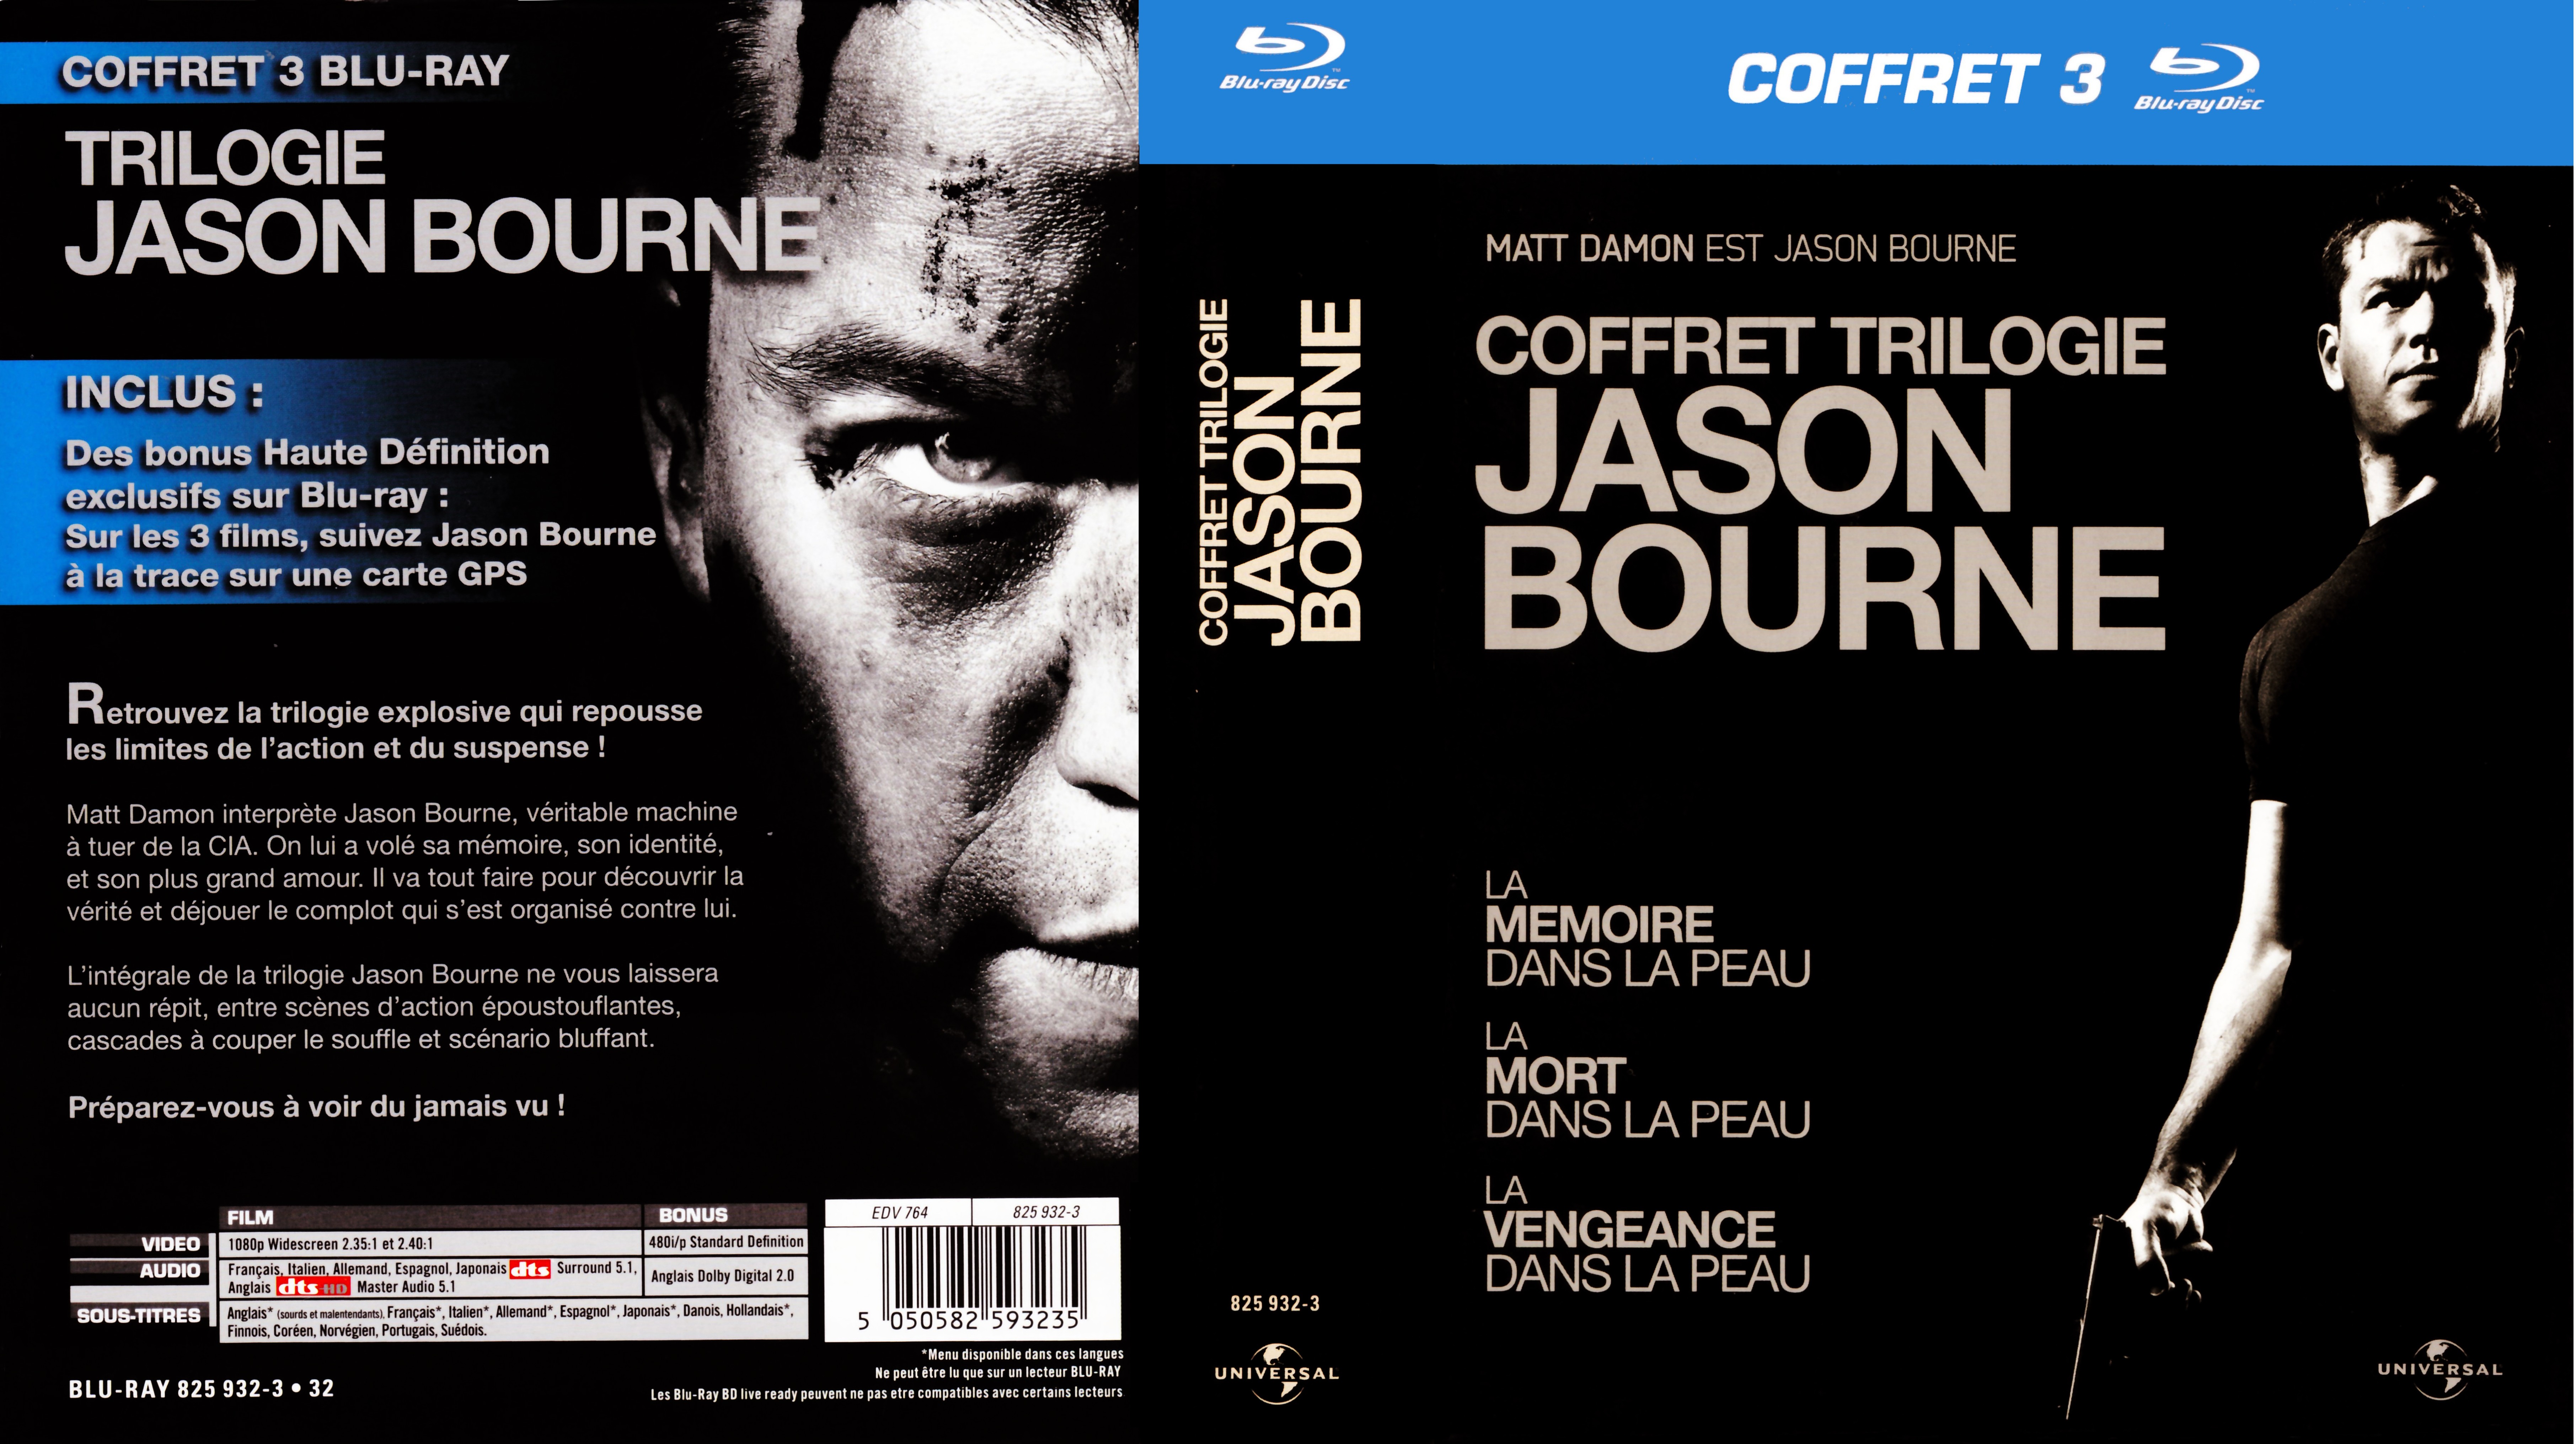 Jaquette Dvd De Jason Bourne Trilogie Coffret Blu Ray Cinéma Passion